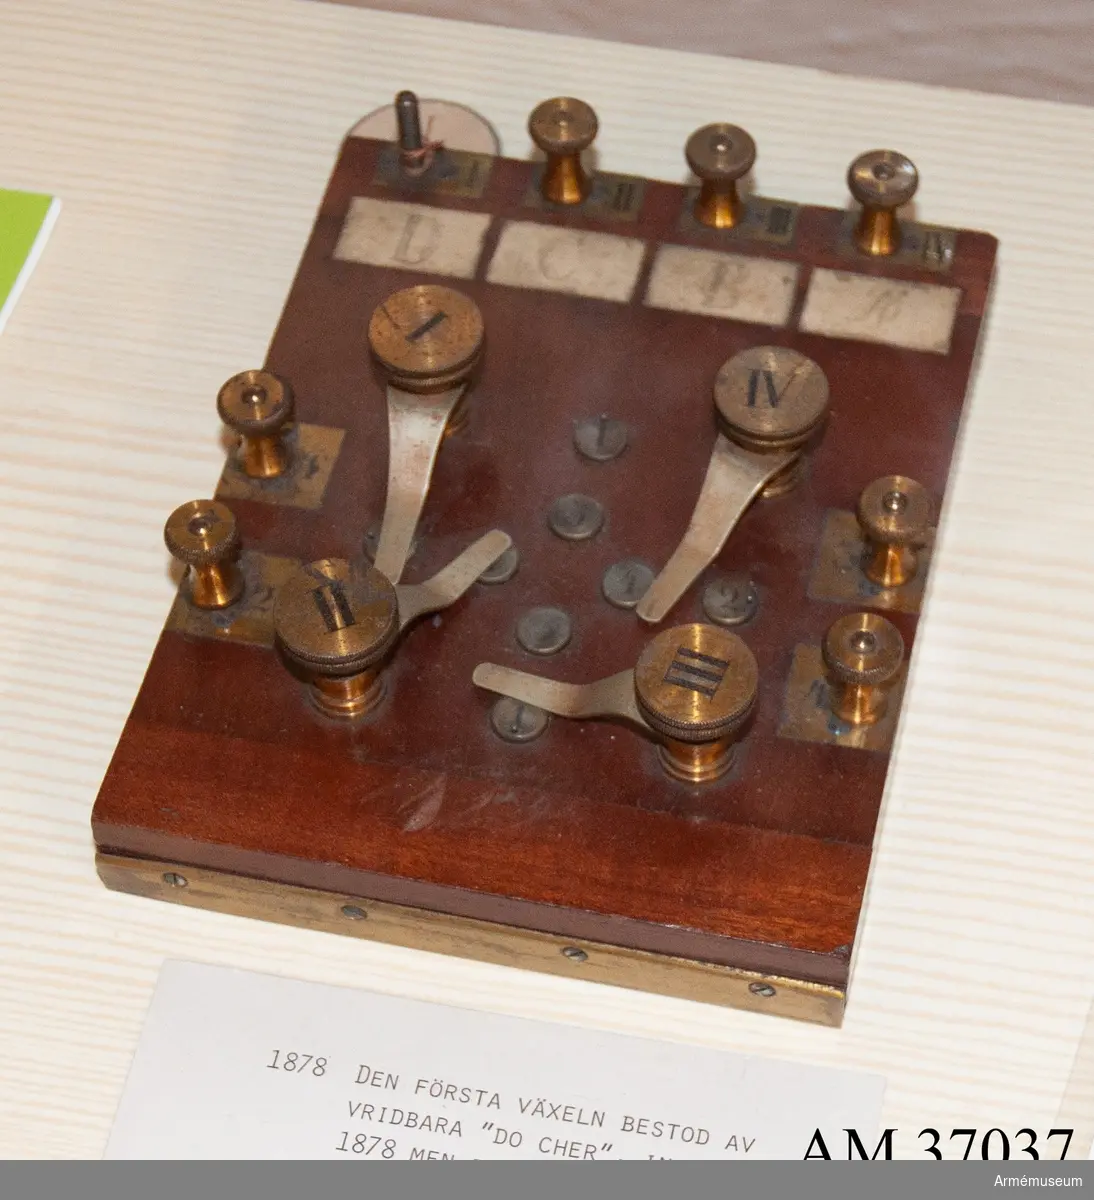 Grupp H I.

Den första växeln, införd 1878. 
Vridbara kontakter, benämnda "do cher".  
Ersattes 1886 av linjeväxel med skivor, hål och proppar.